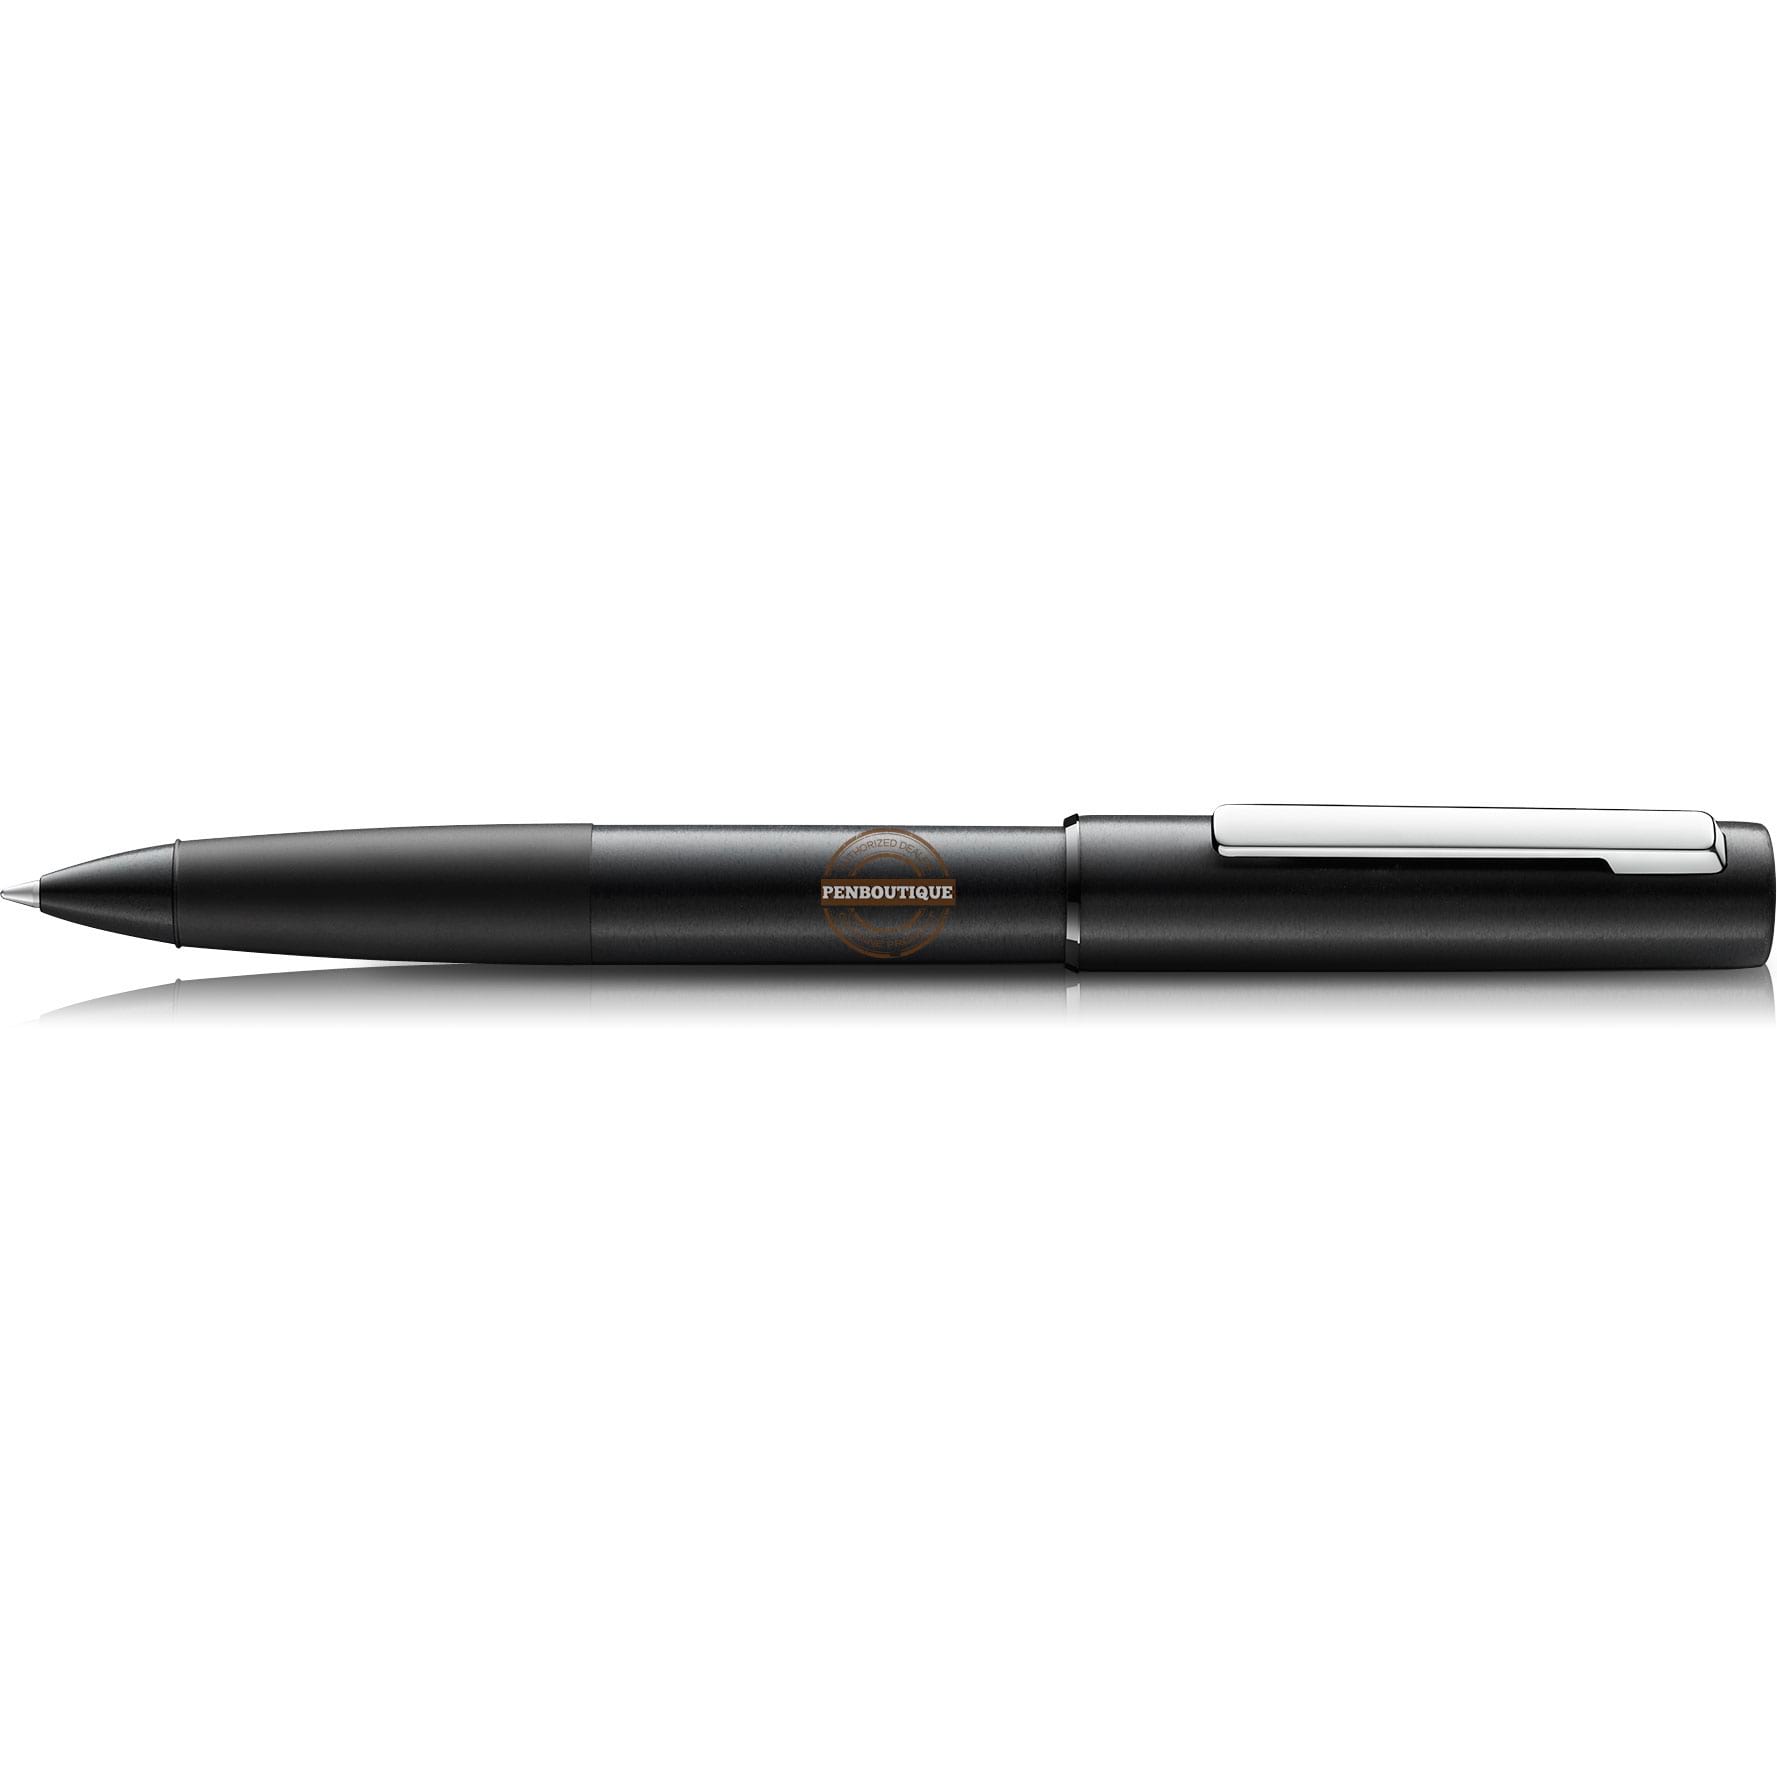 Lamy Aion Black Rollerball Pen-Pen Boutique Ltd